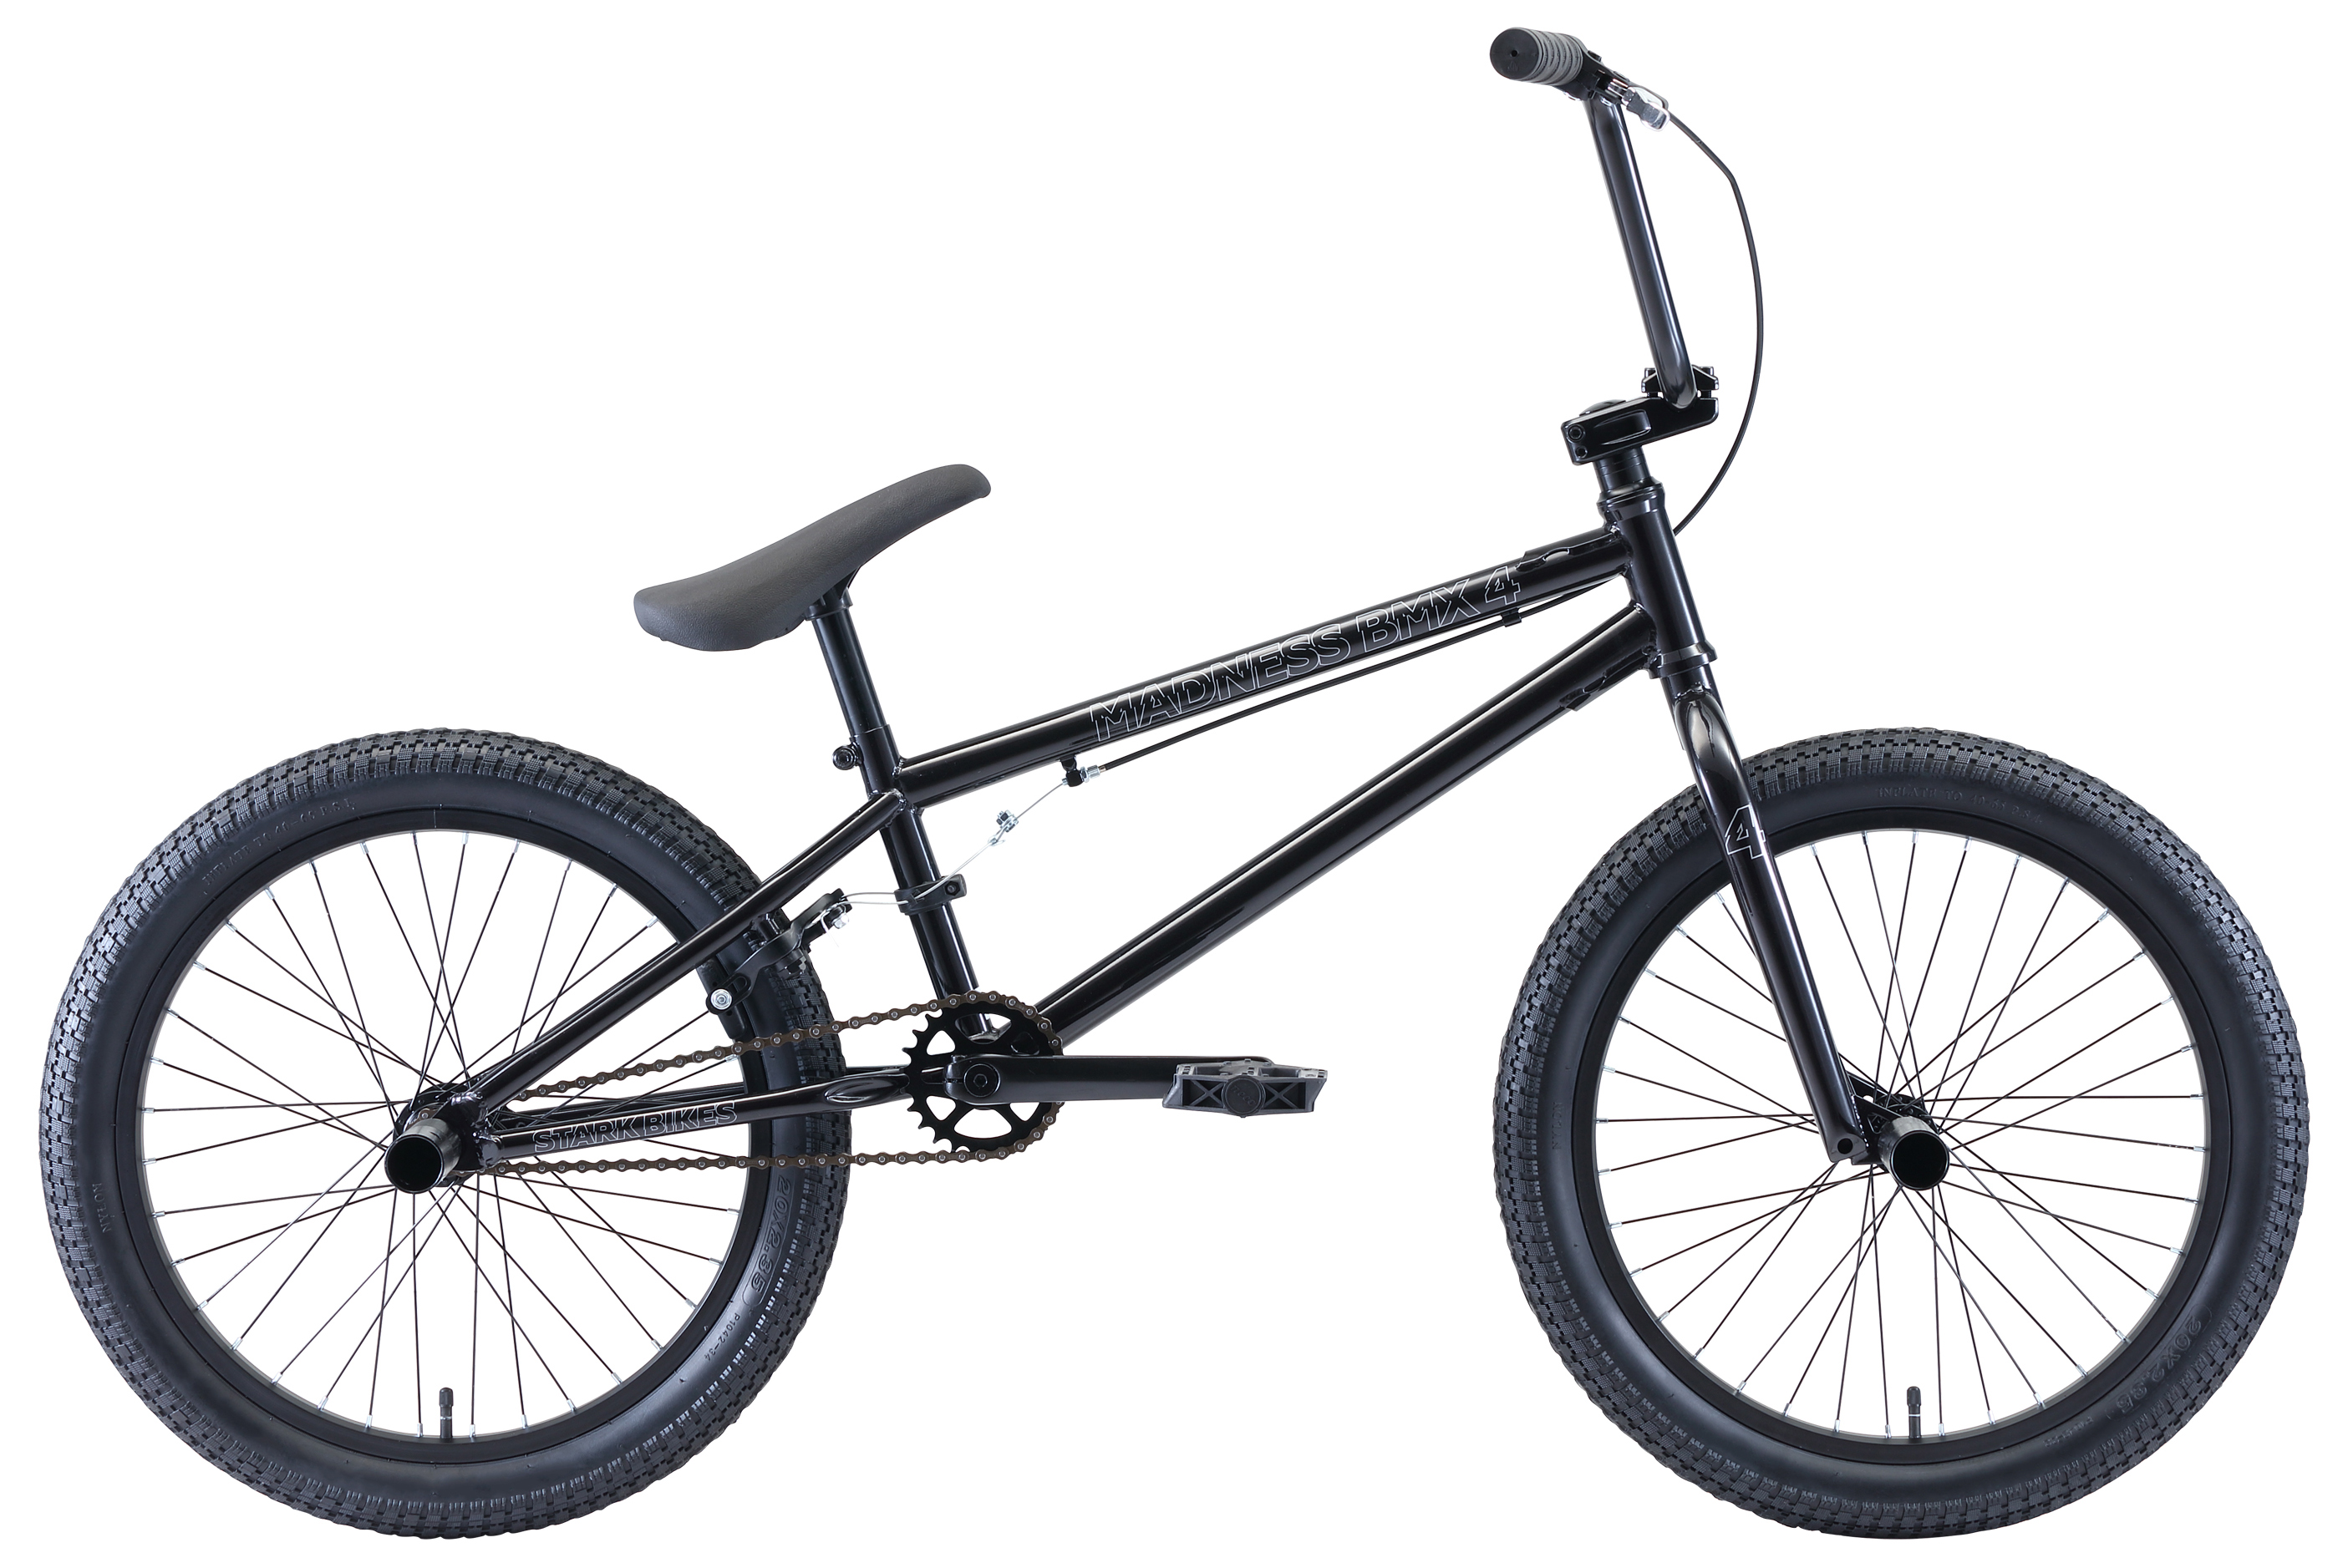  Отзывы о Велосипеде BMX Stark Madness BMX 4 2020